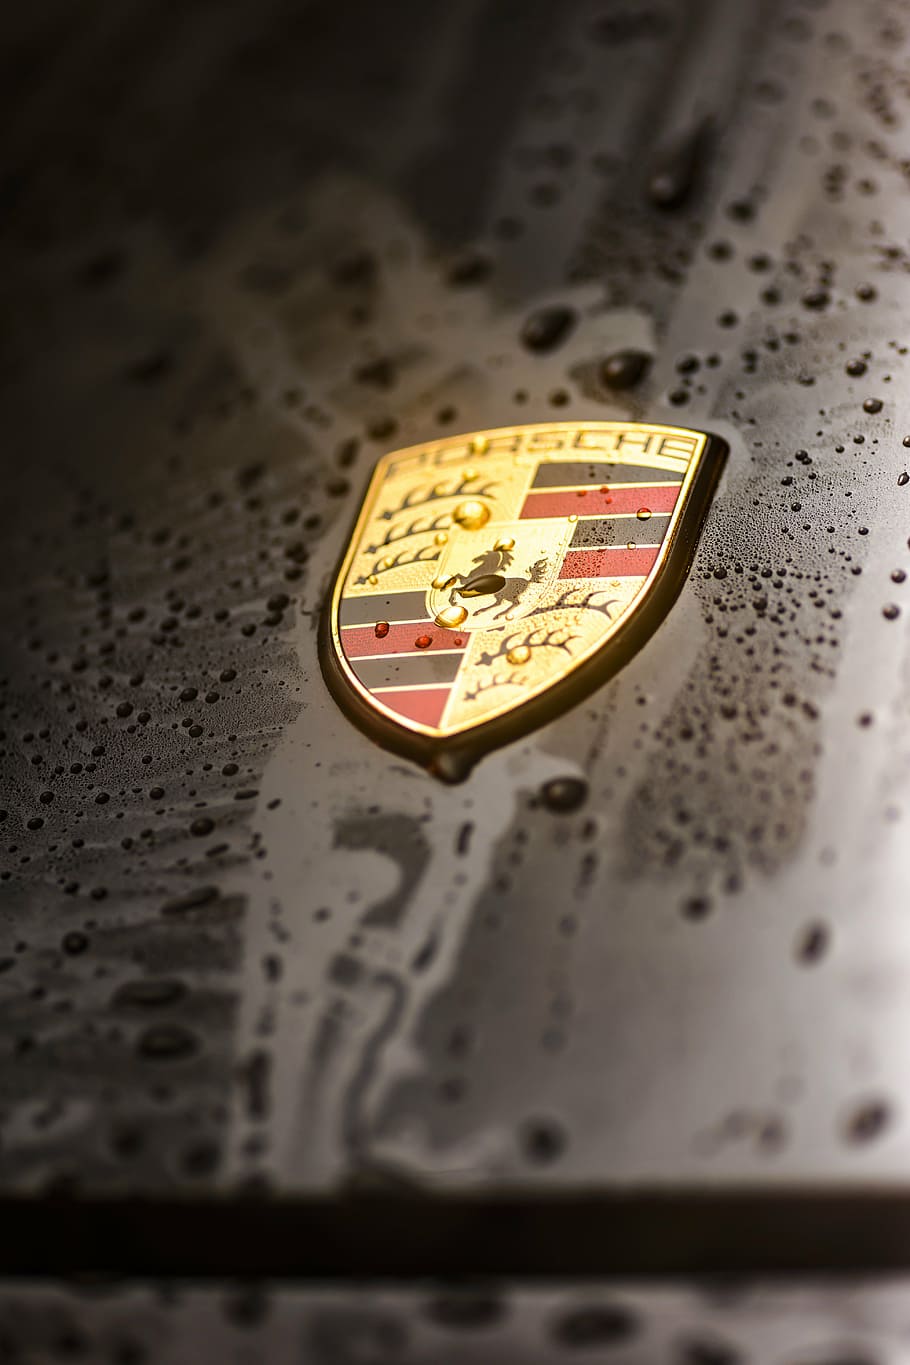 HD wallpaper: Porsche emblem on car with water drops, 911, carrera, 4s, logo  | Wallpaper Flare